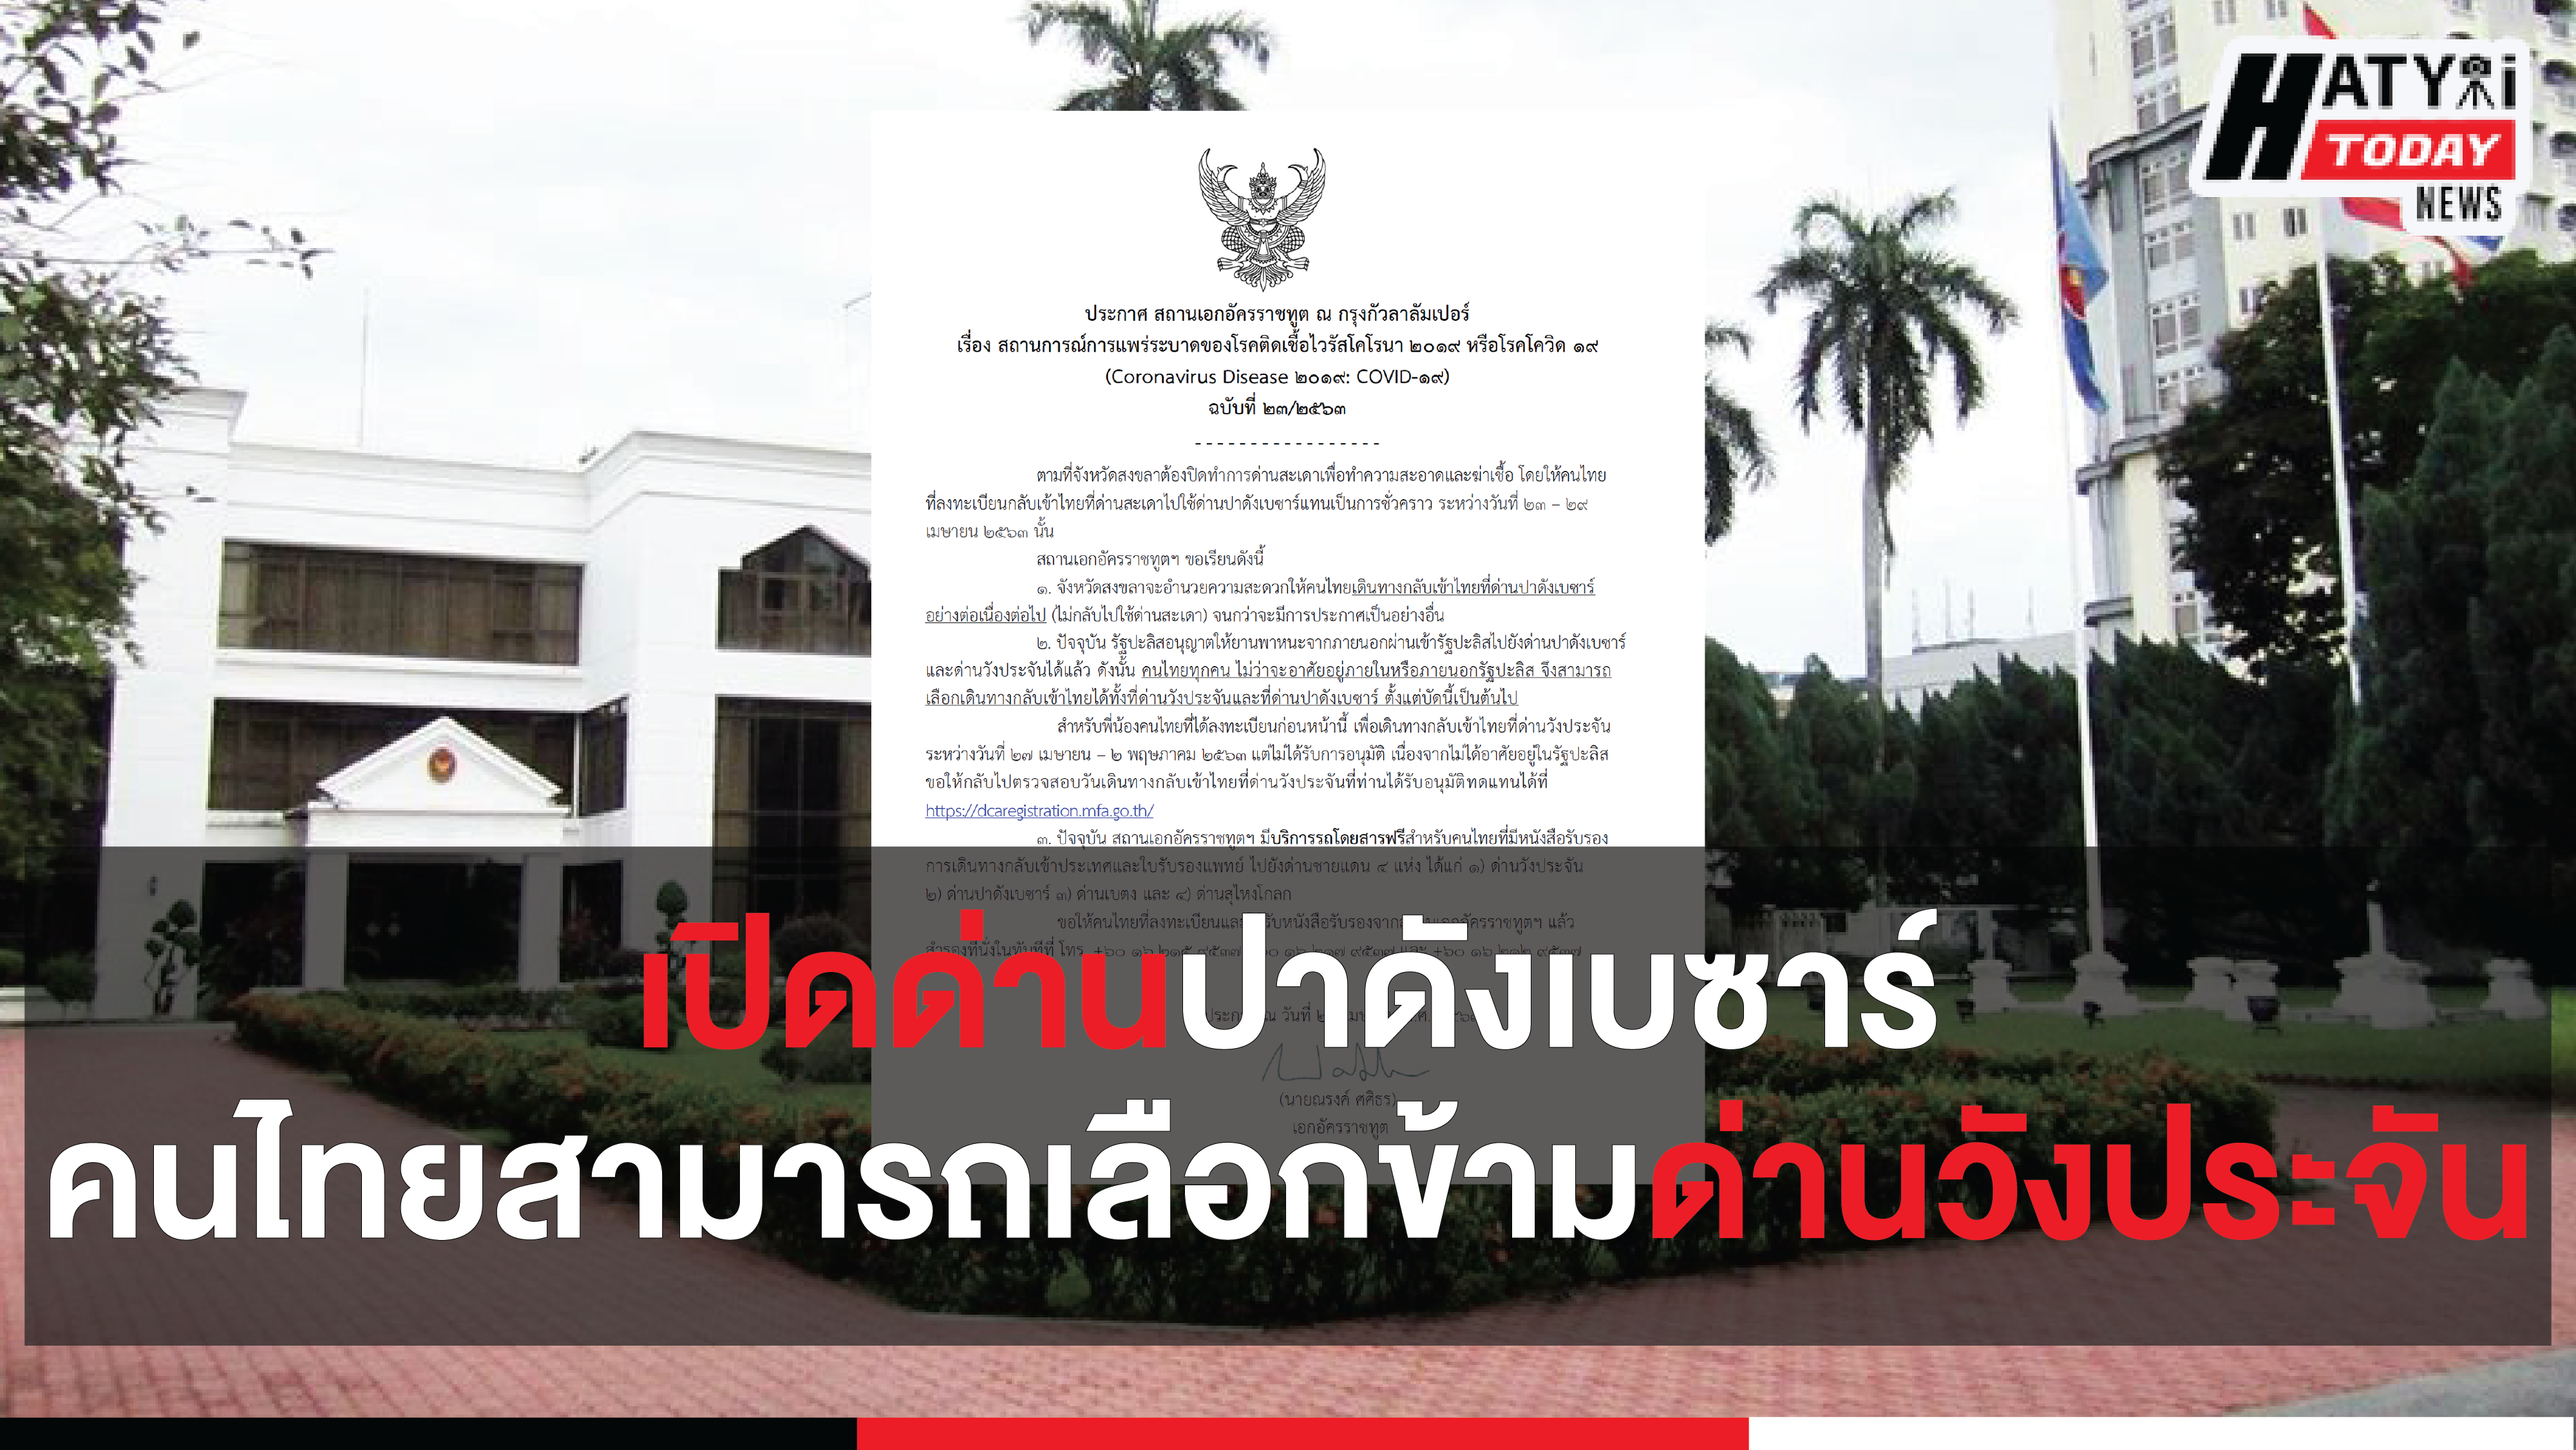 สถานเอกอัครราชทูต ณ กรุงกัวลาลัมเปอร์ ออกประกาศเกี่ยวกับการเดินทางกลับเข้าประเทศไทย